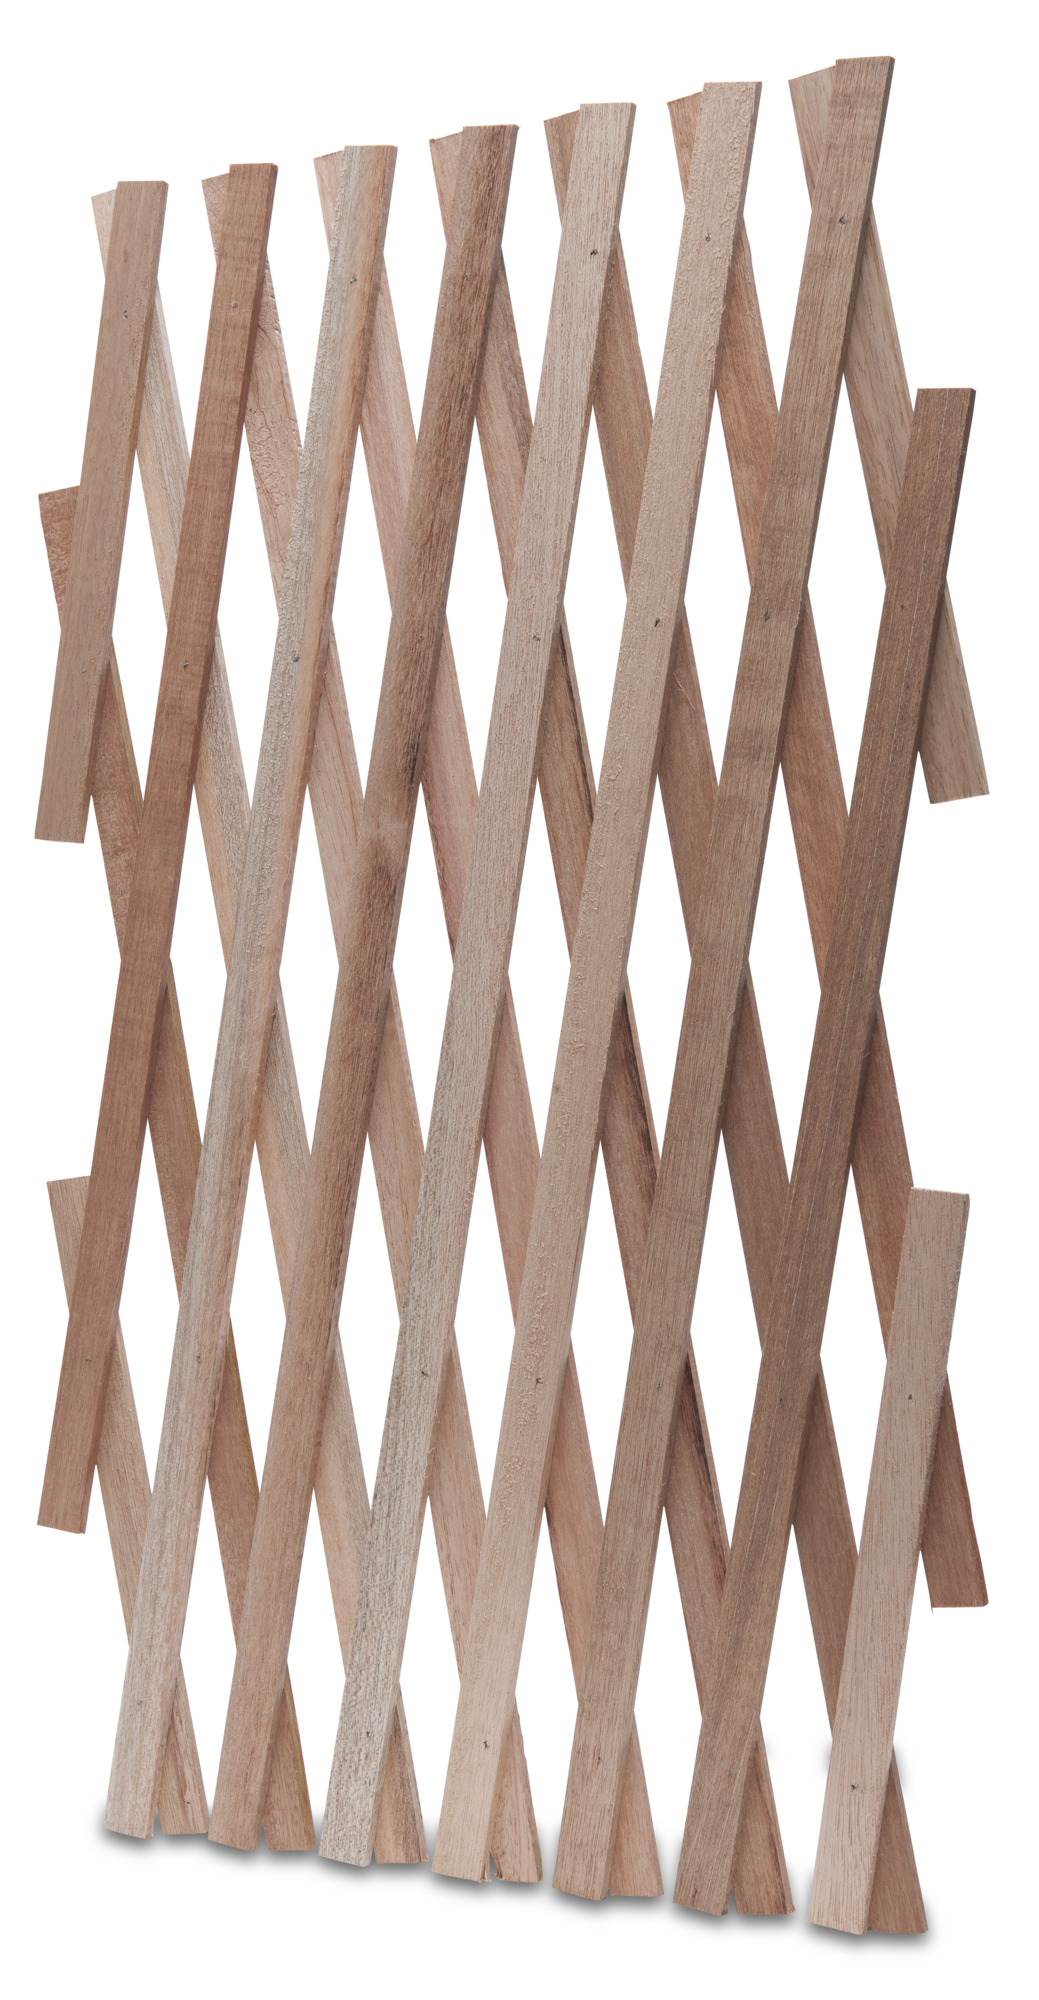 Holz-Spalier 45X180cm natur   